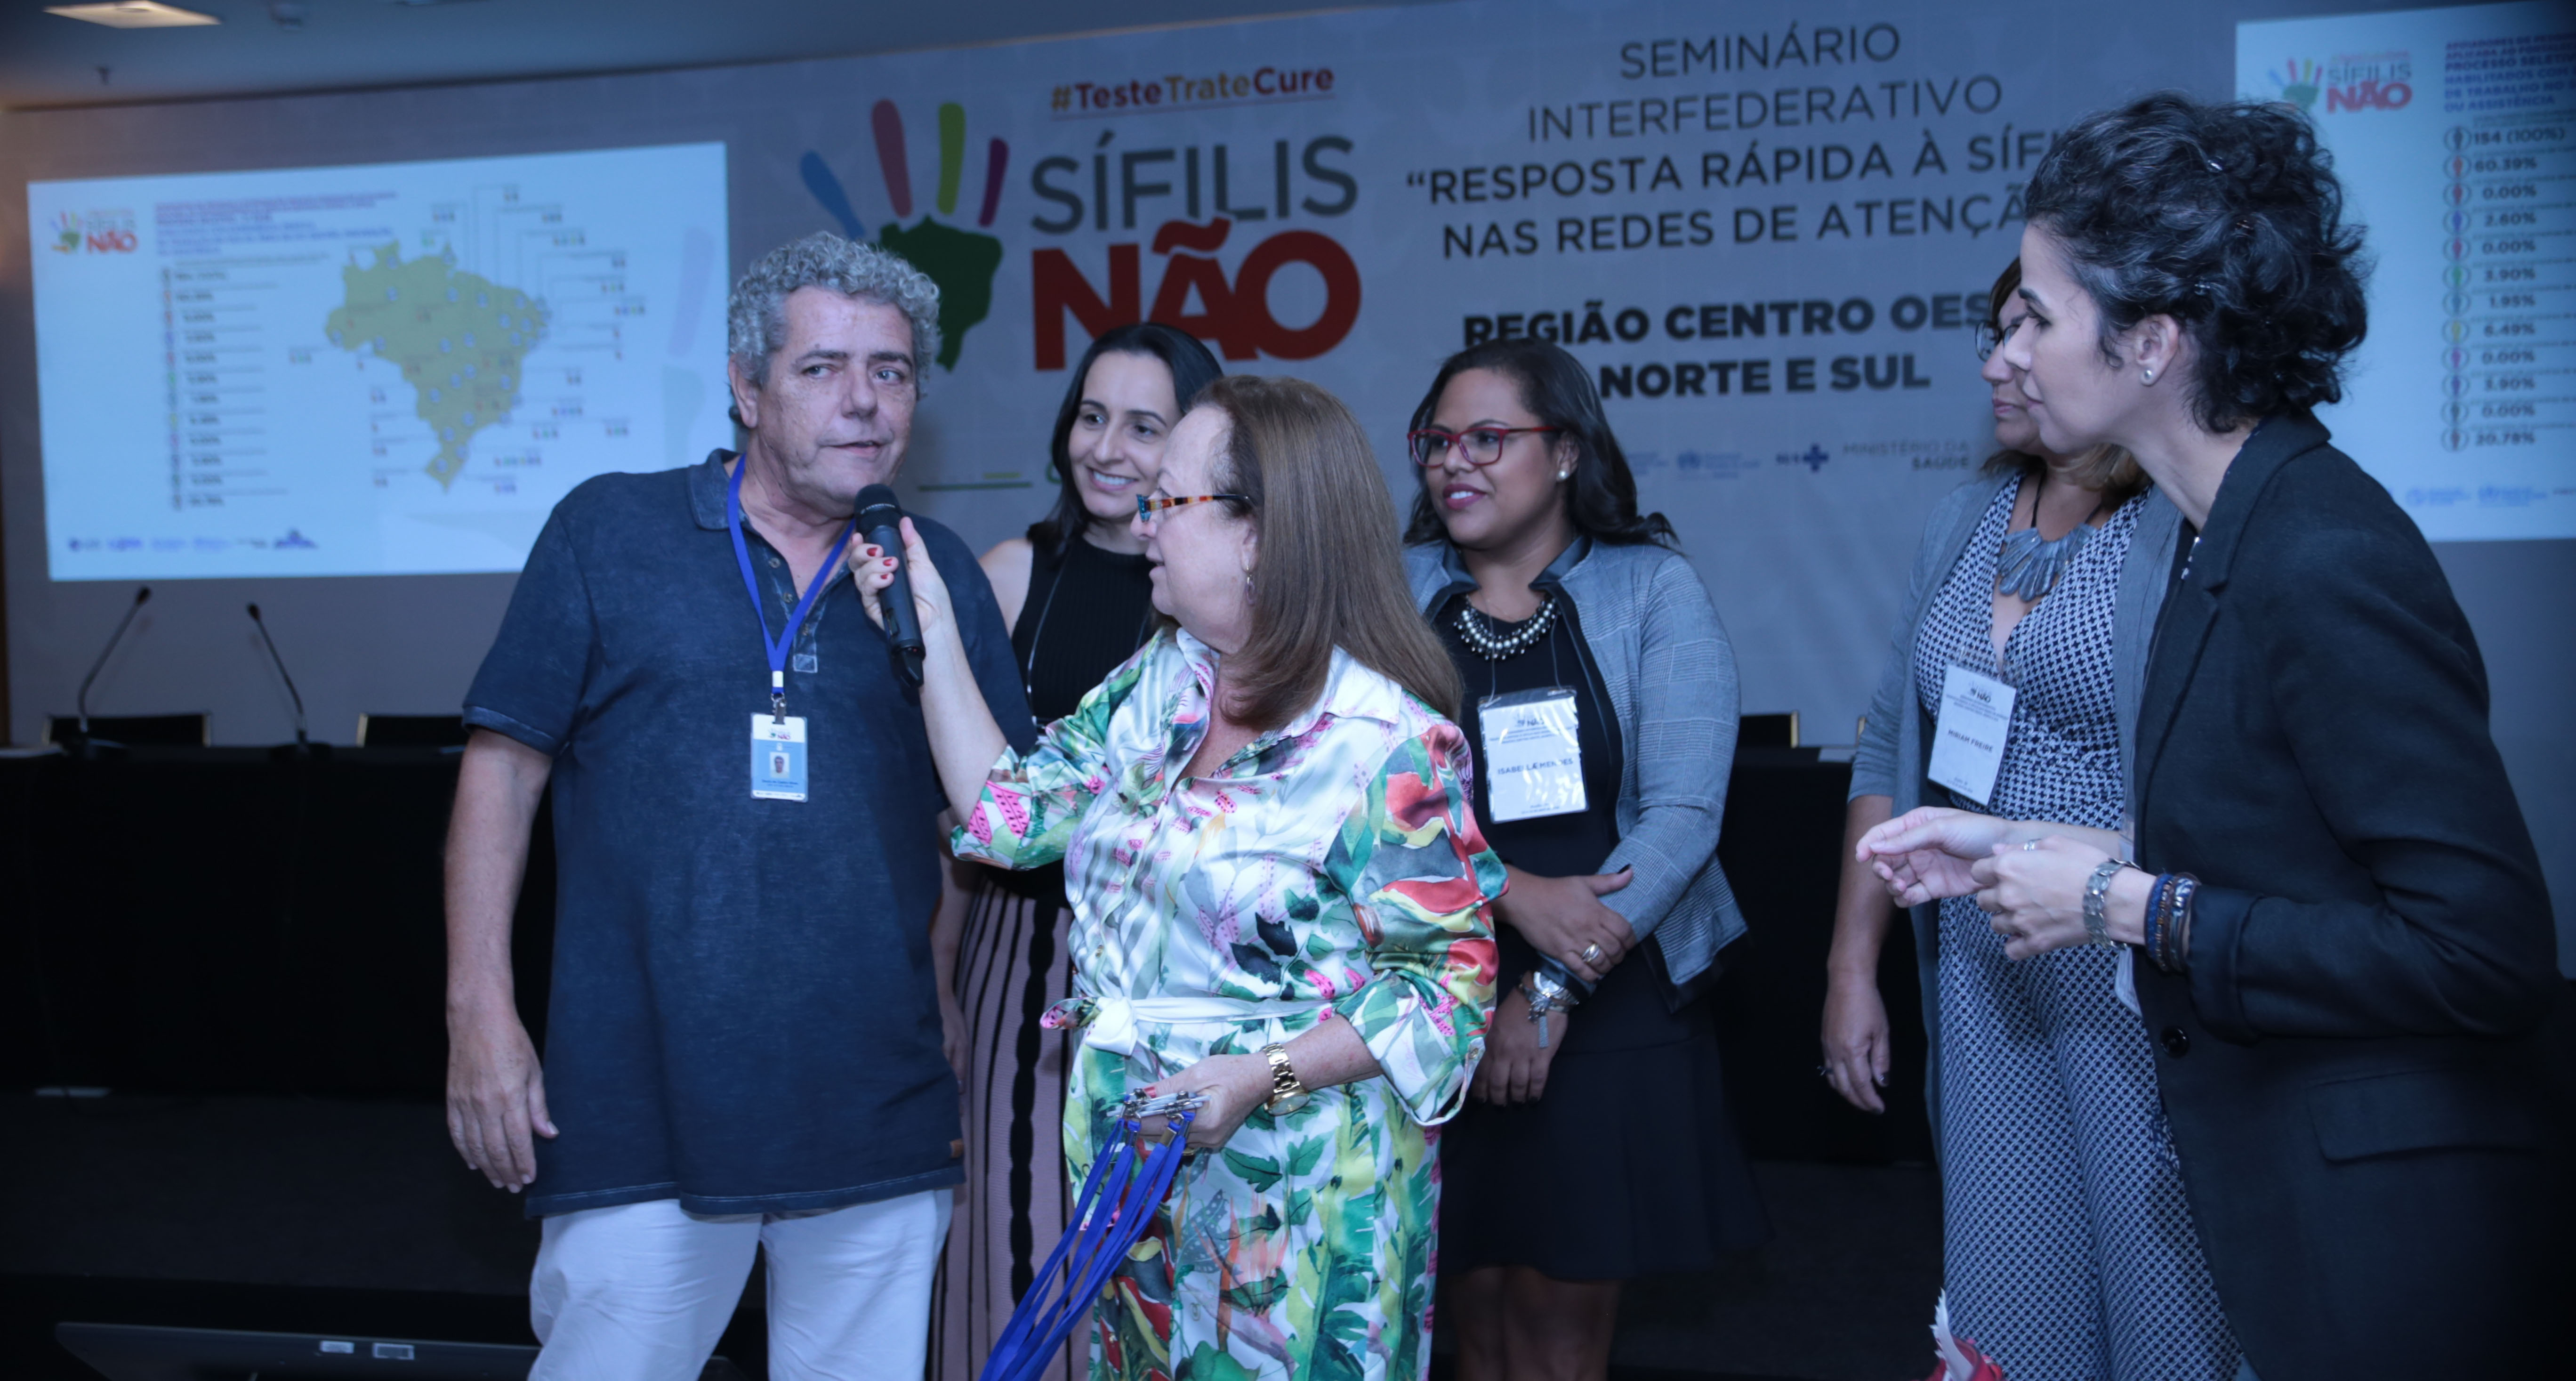 Seminário apresenta projeto “Resposta Rápida à Sífilis nas Redes de Atenção” a profissionais de saúde